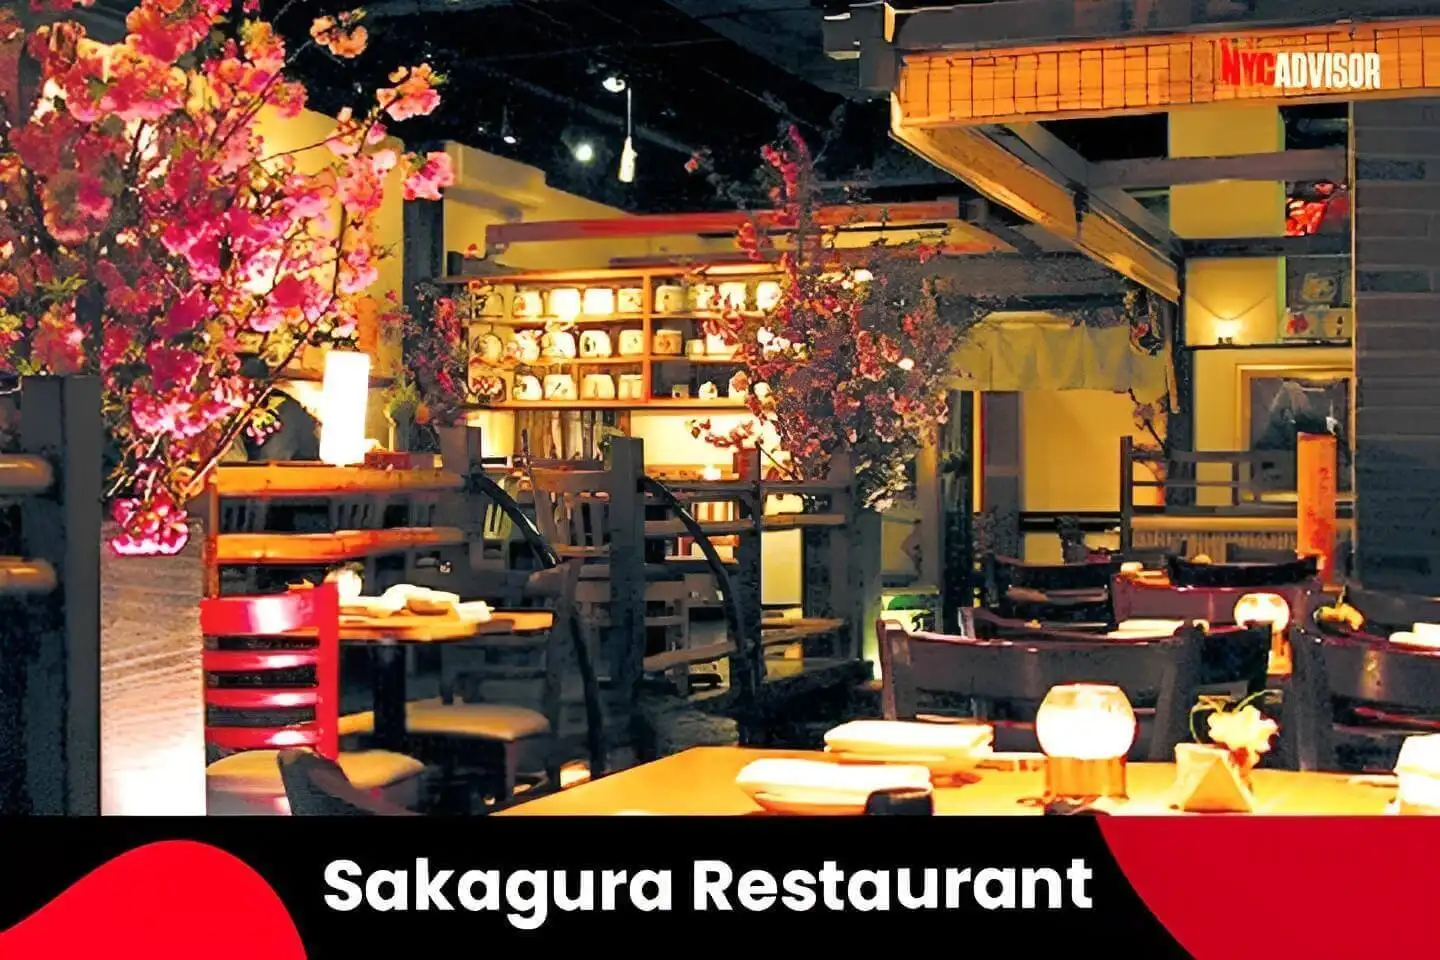 Sakagura Restaurant in New York City